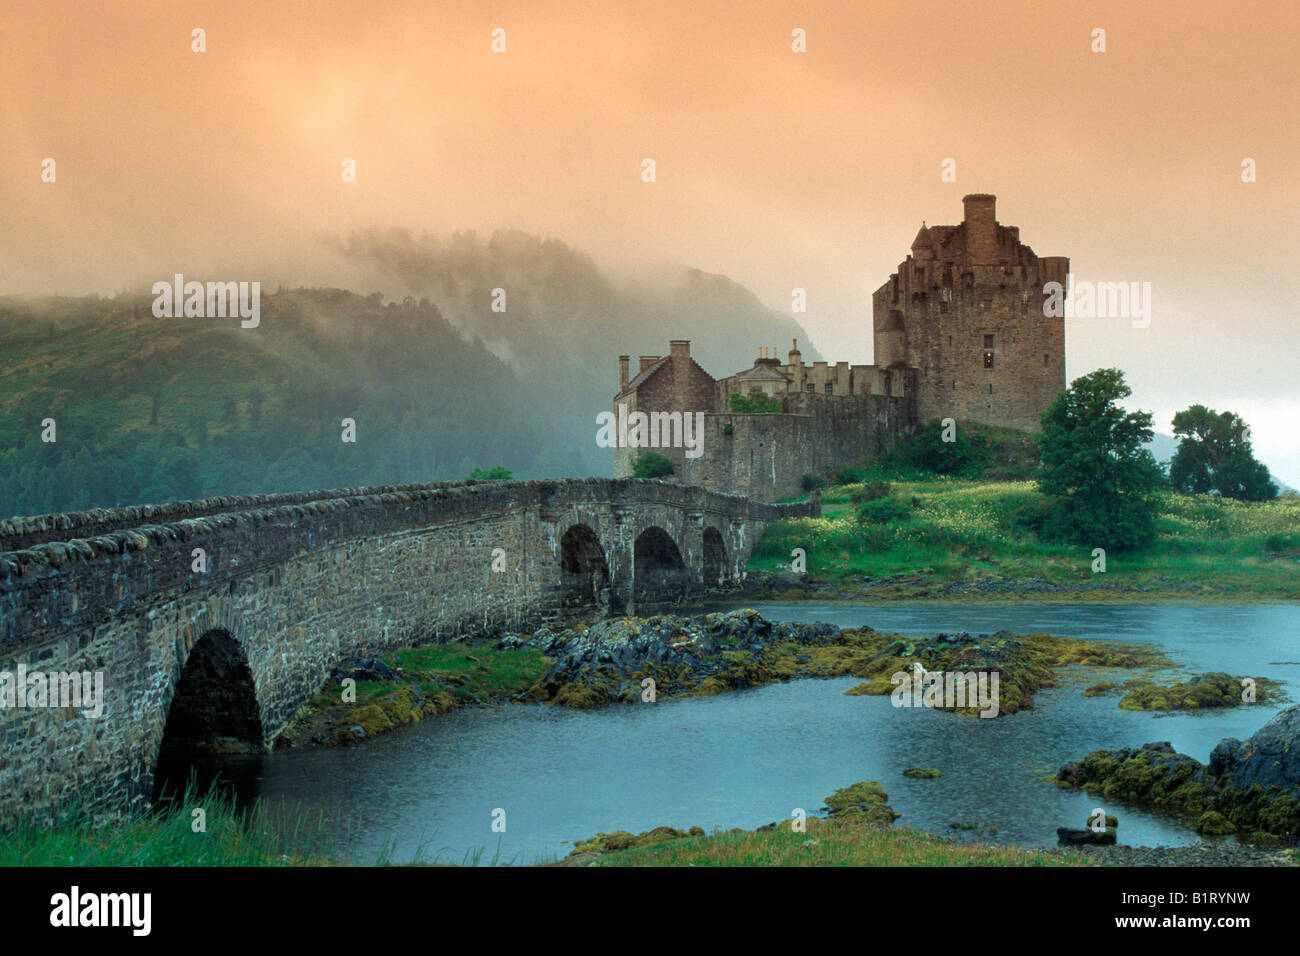 Le Château d'Eilean Donan, Loch Duich, hautes terres de l'Ouest, près de l'île de Skye, Ecosse, Europe Banque D'Images